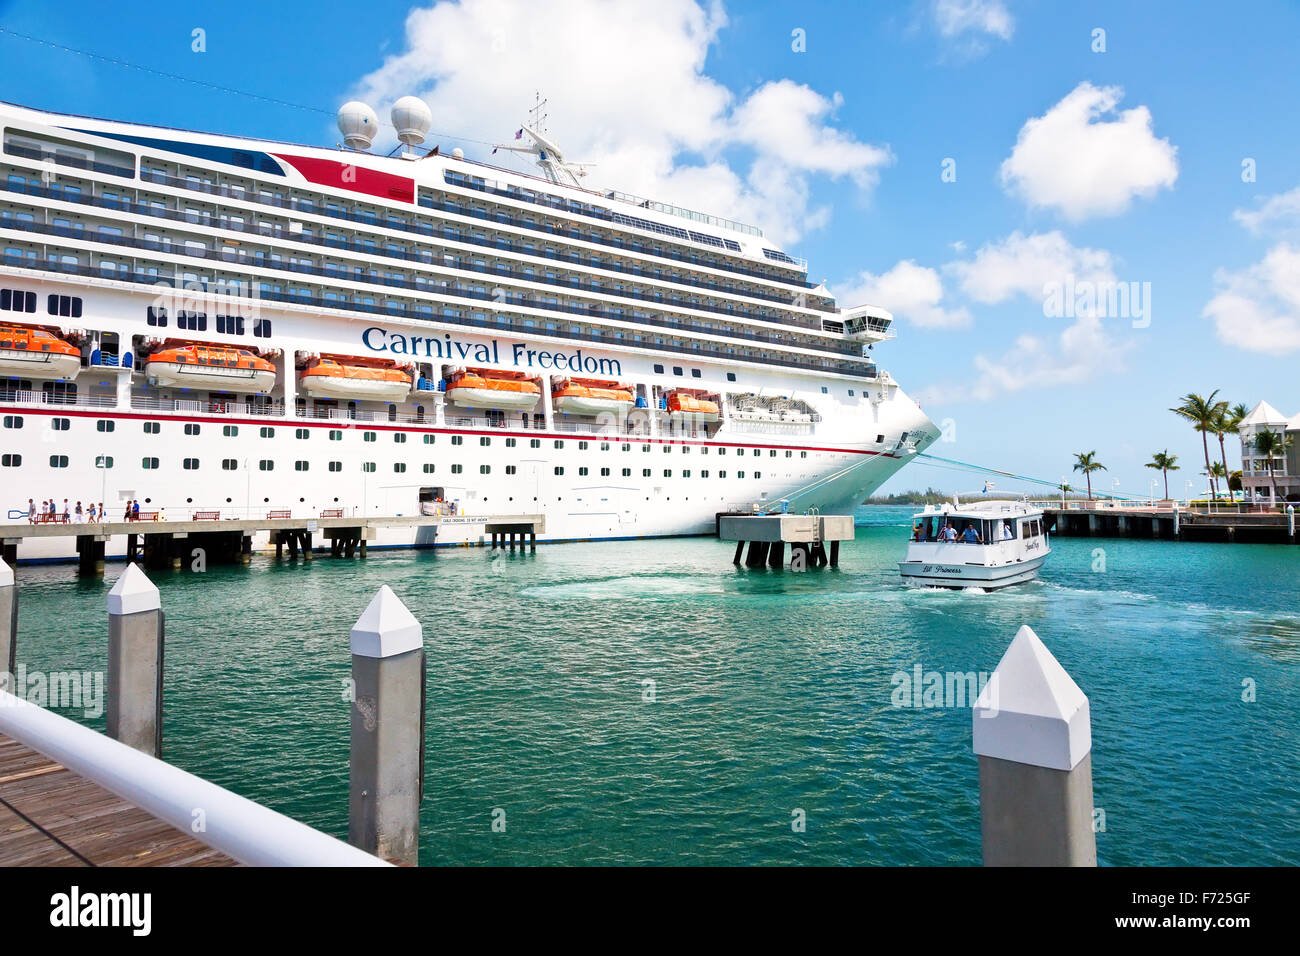 Carnival-Kreuzfahrtschiff, das Freiheit, verankert in Key West, Florida. Stockfoto